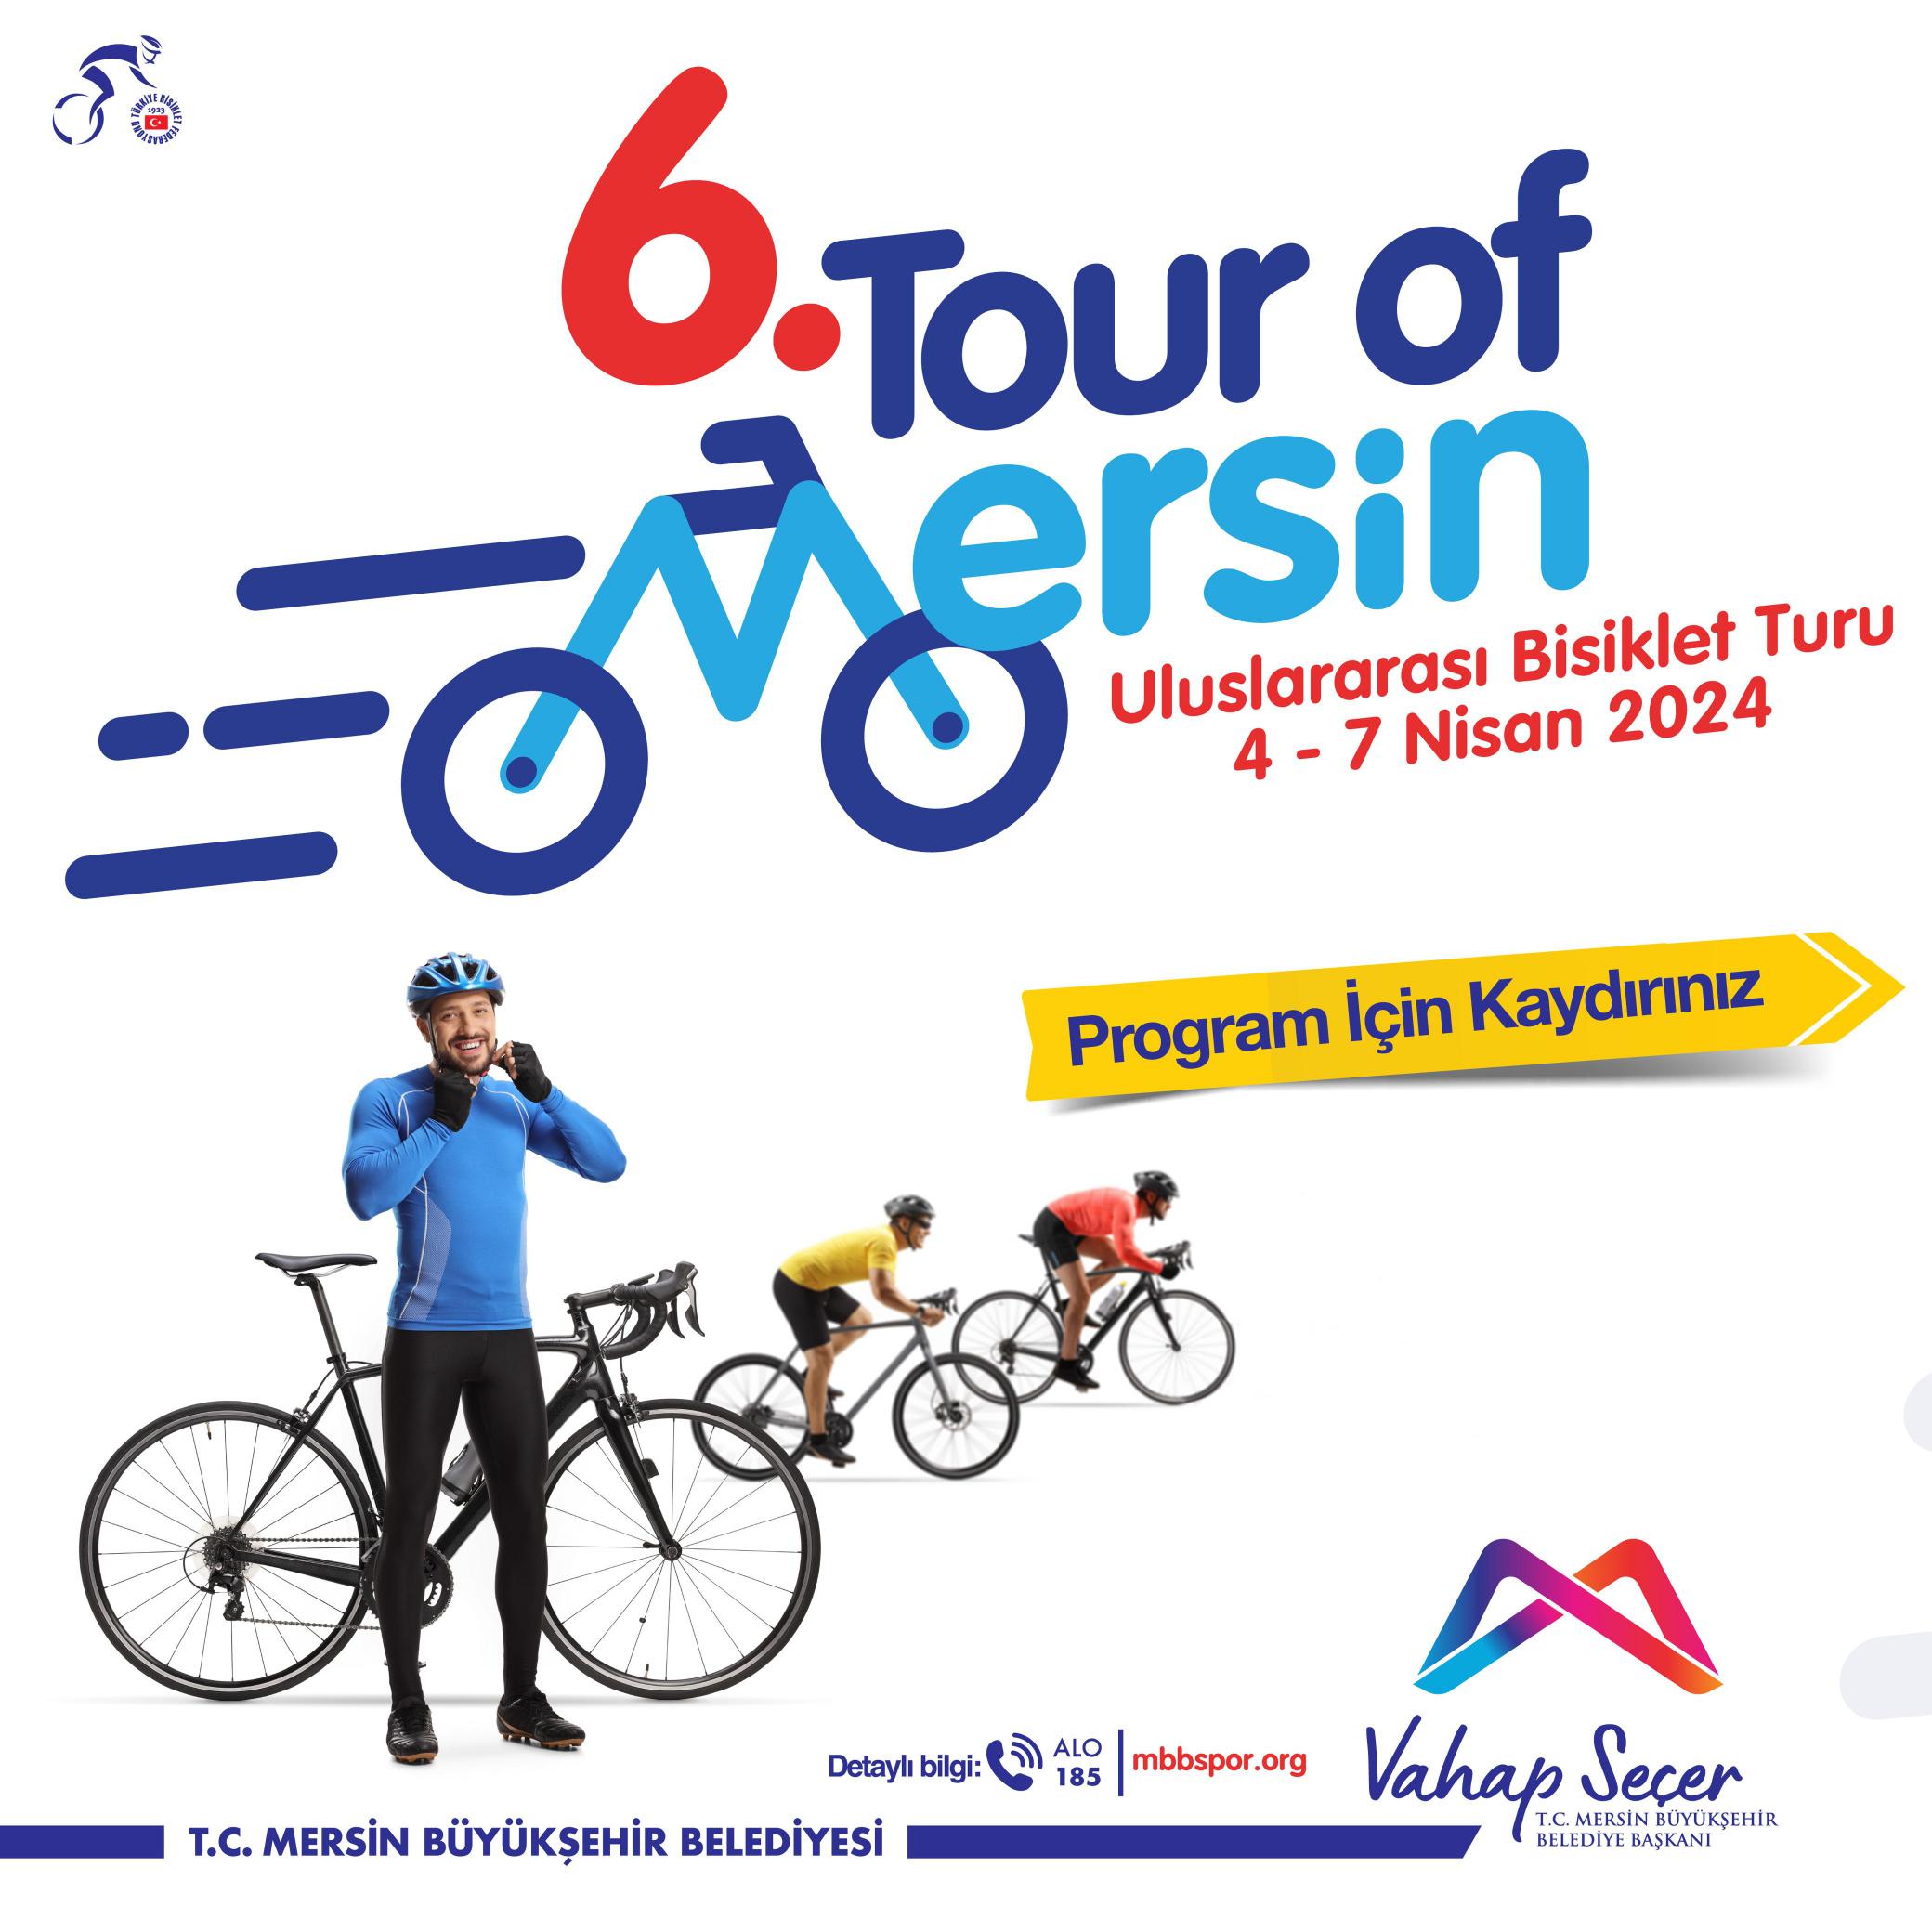 6. Tour of Mersin Uluslararası Bisiklet Turu programı